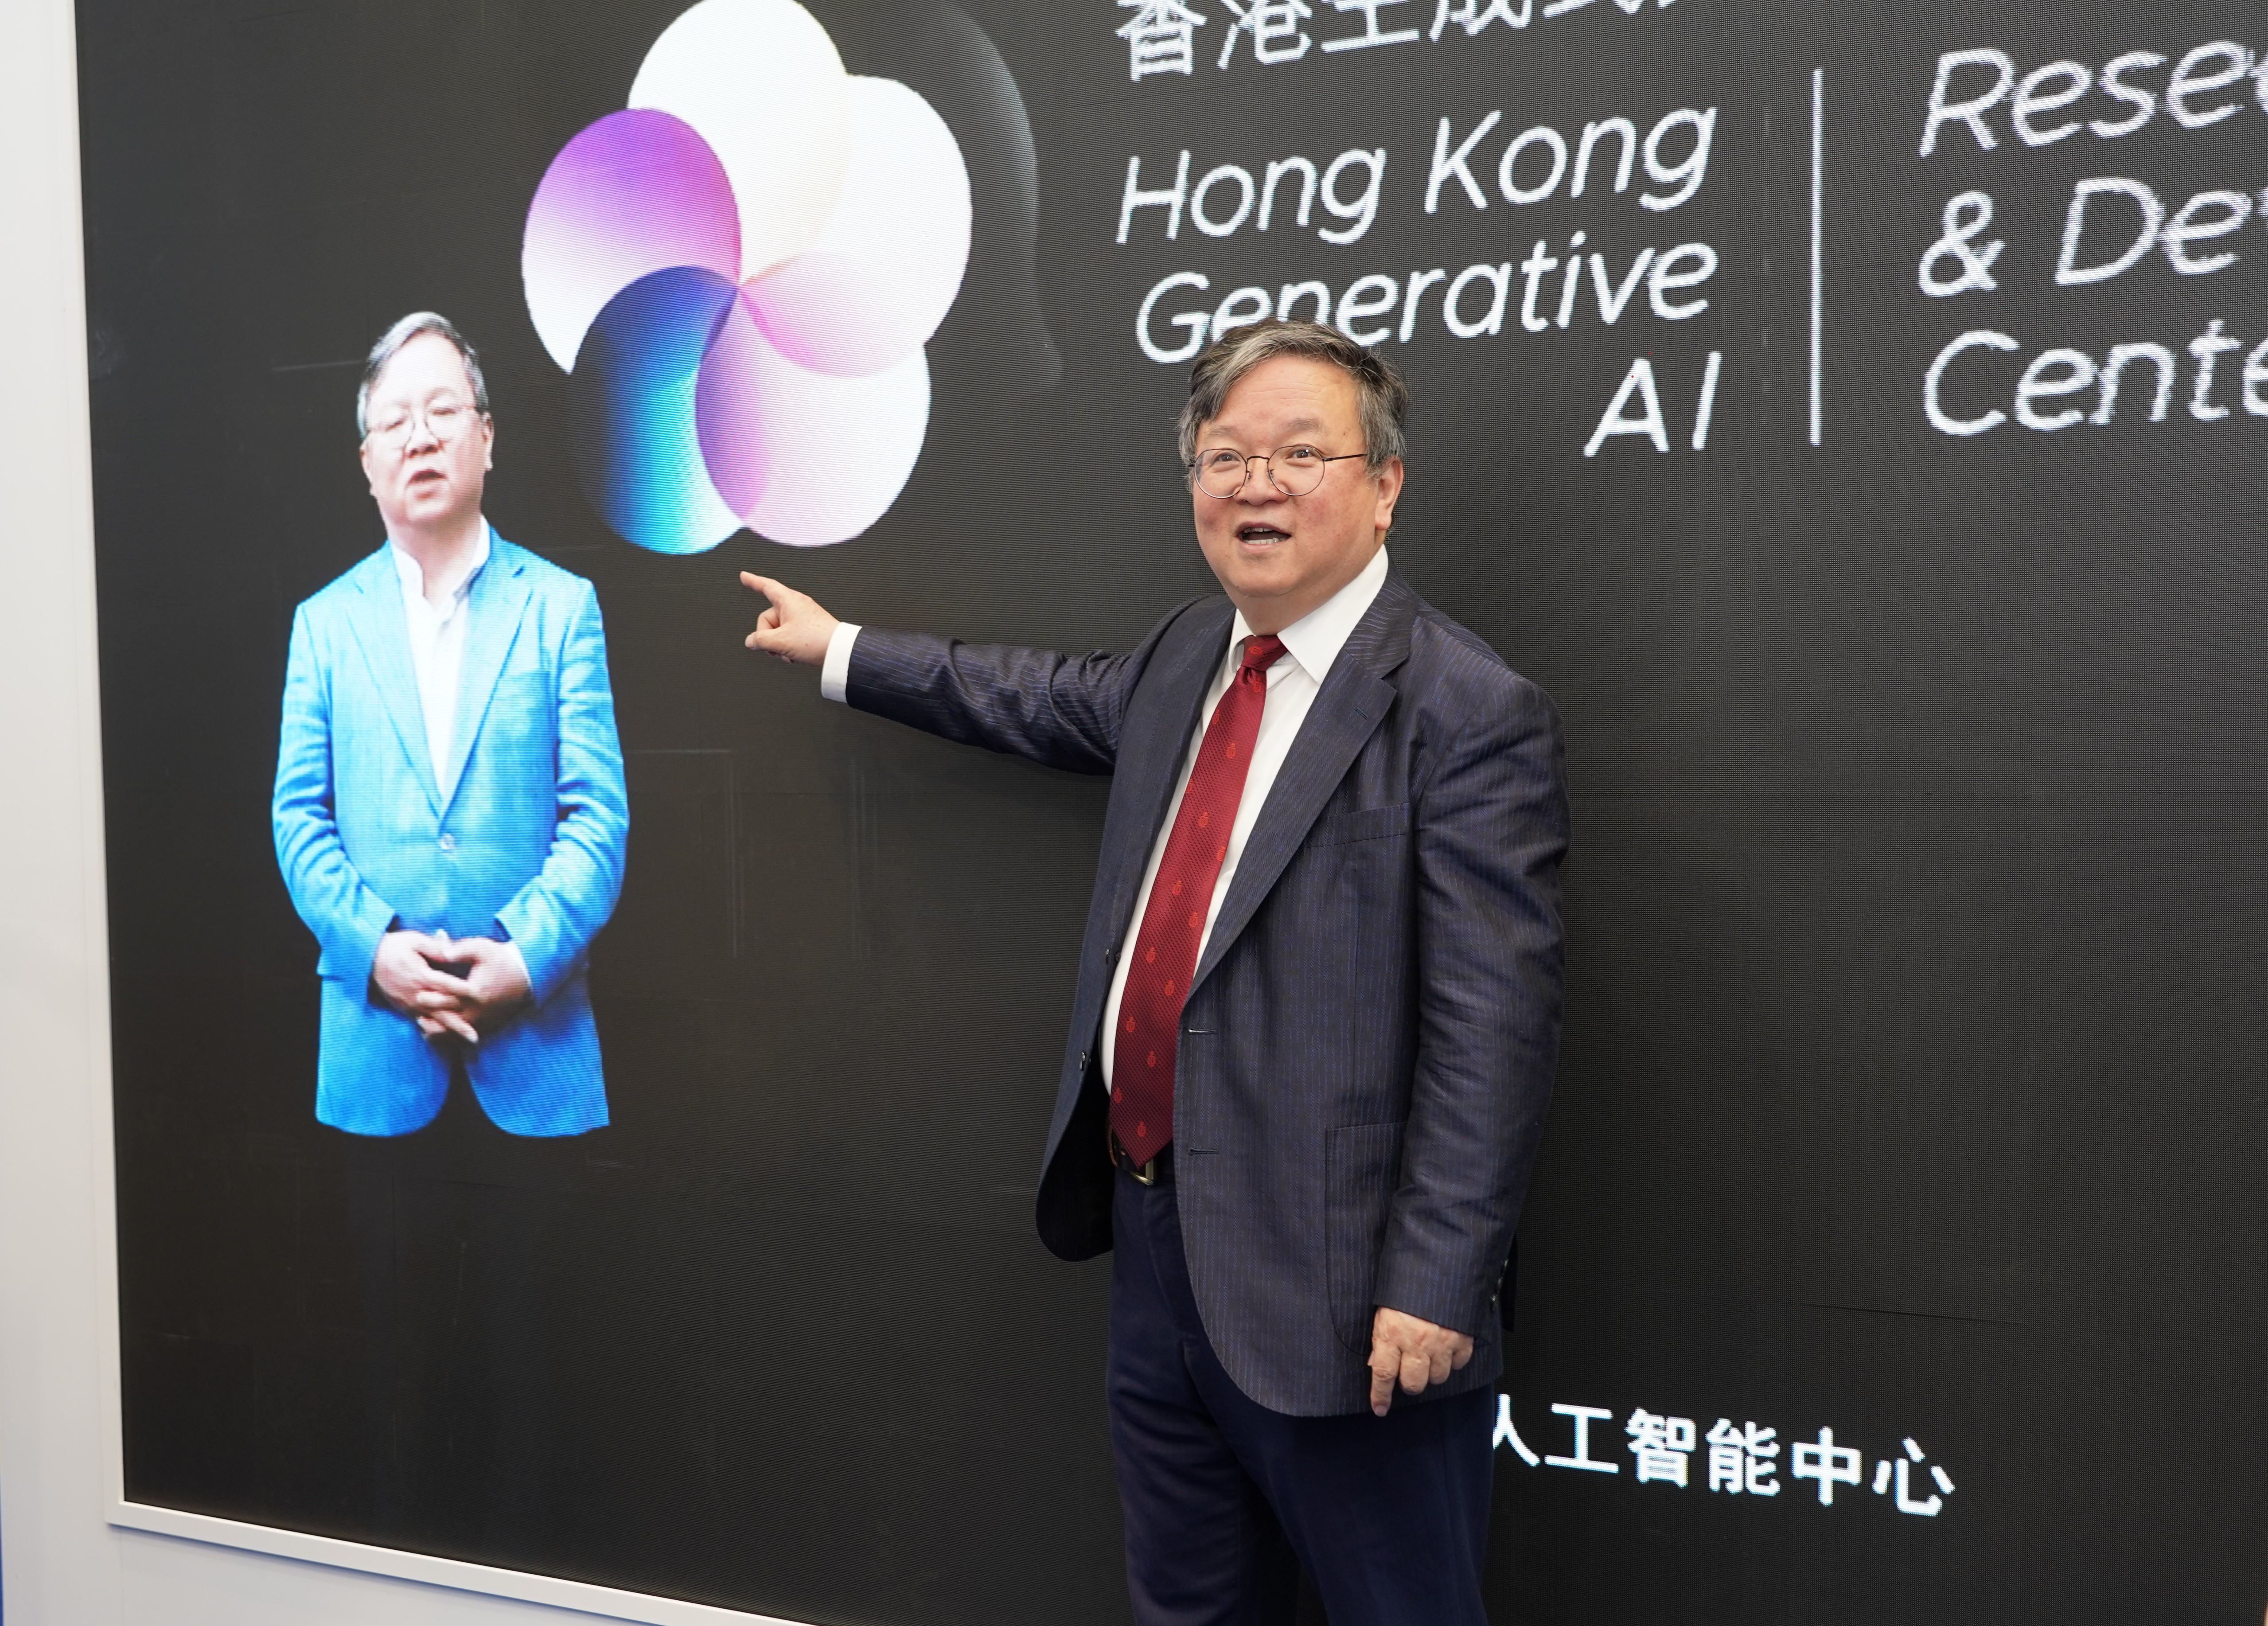 郭教授和他在HKGAI簡介影片中的人工智能生成虛擬形象合照。